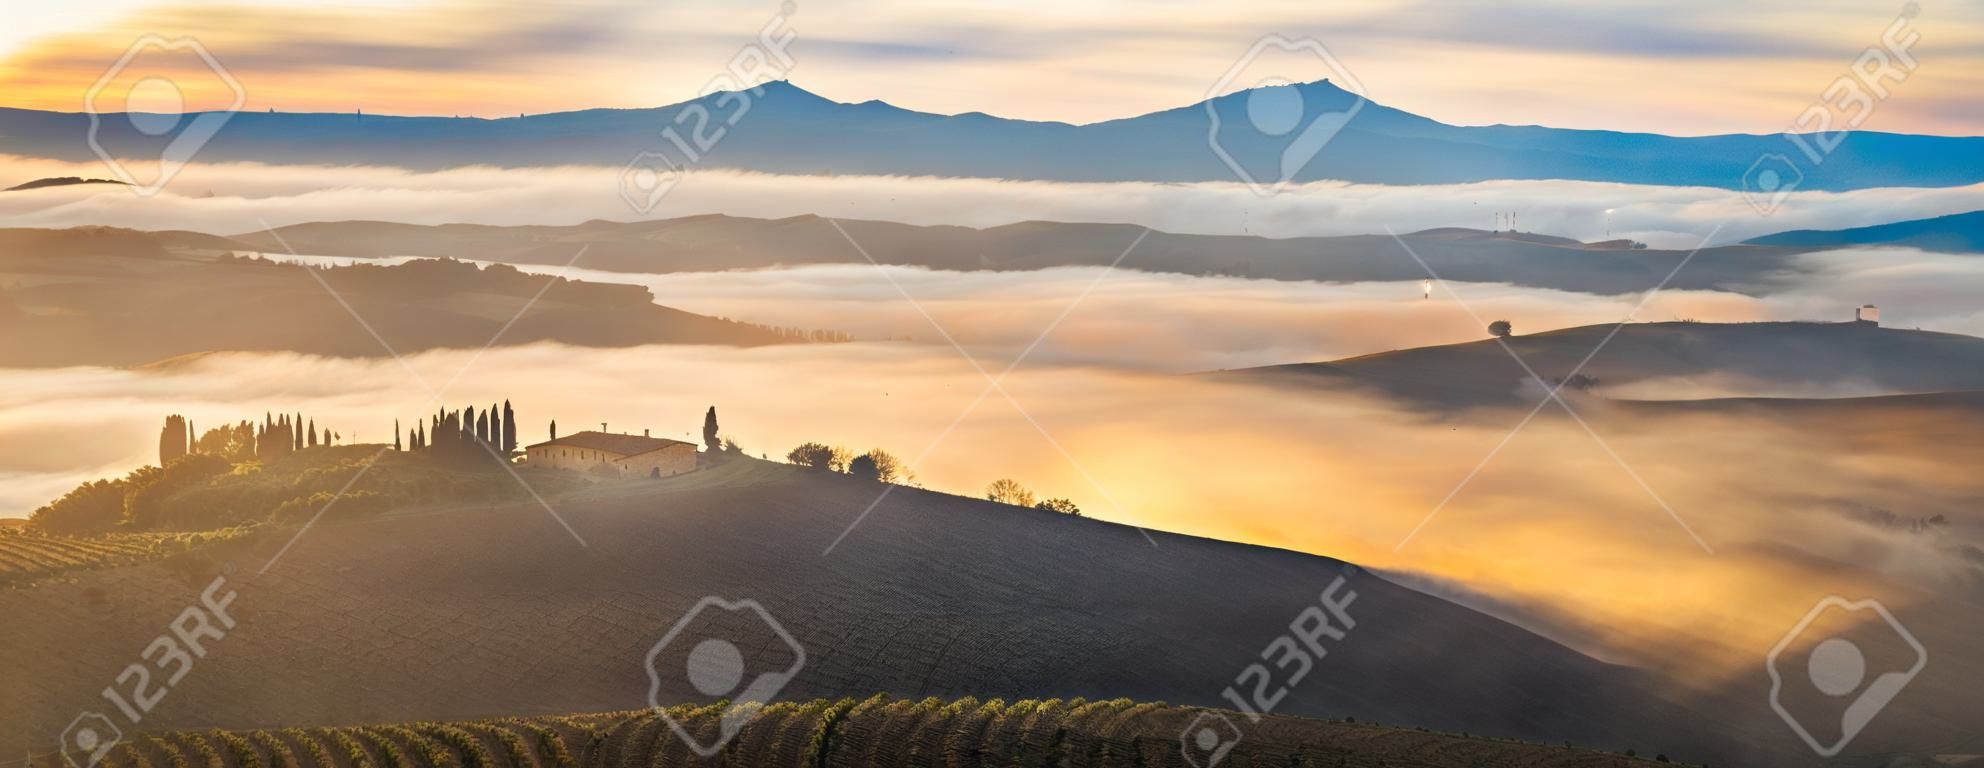 het beroemde Toscaanse landschap bij zonsopgang